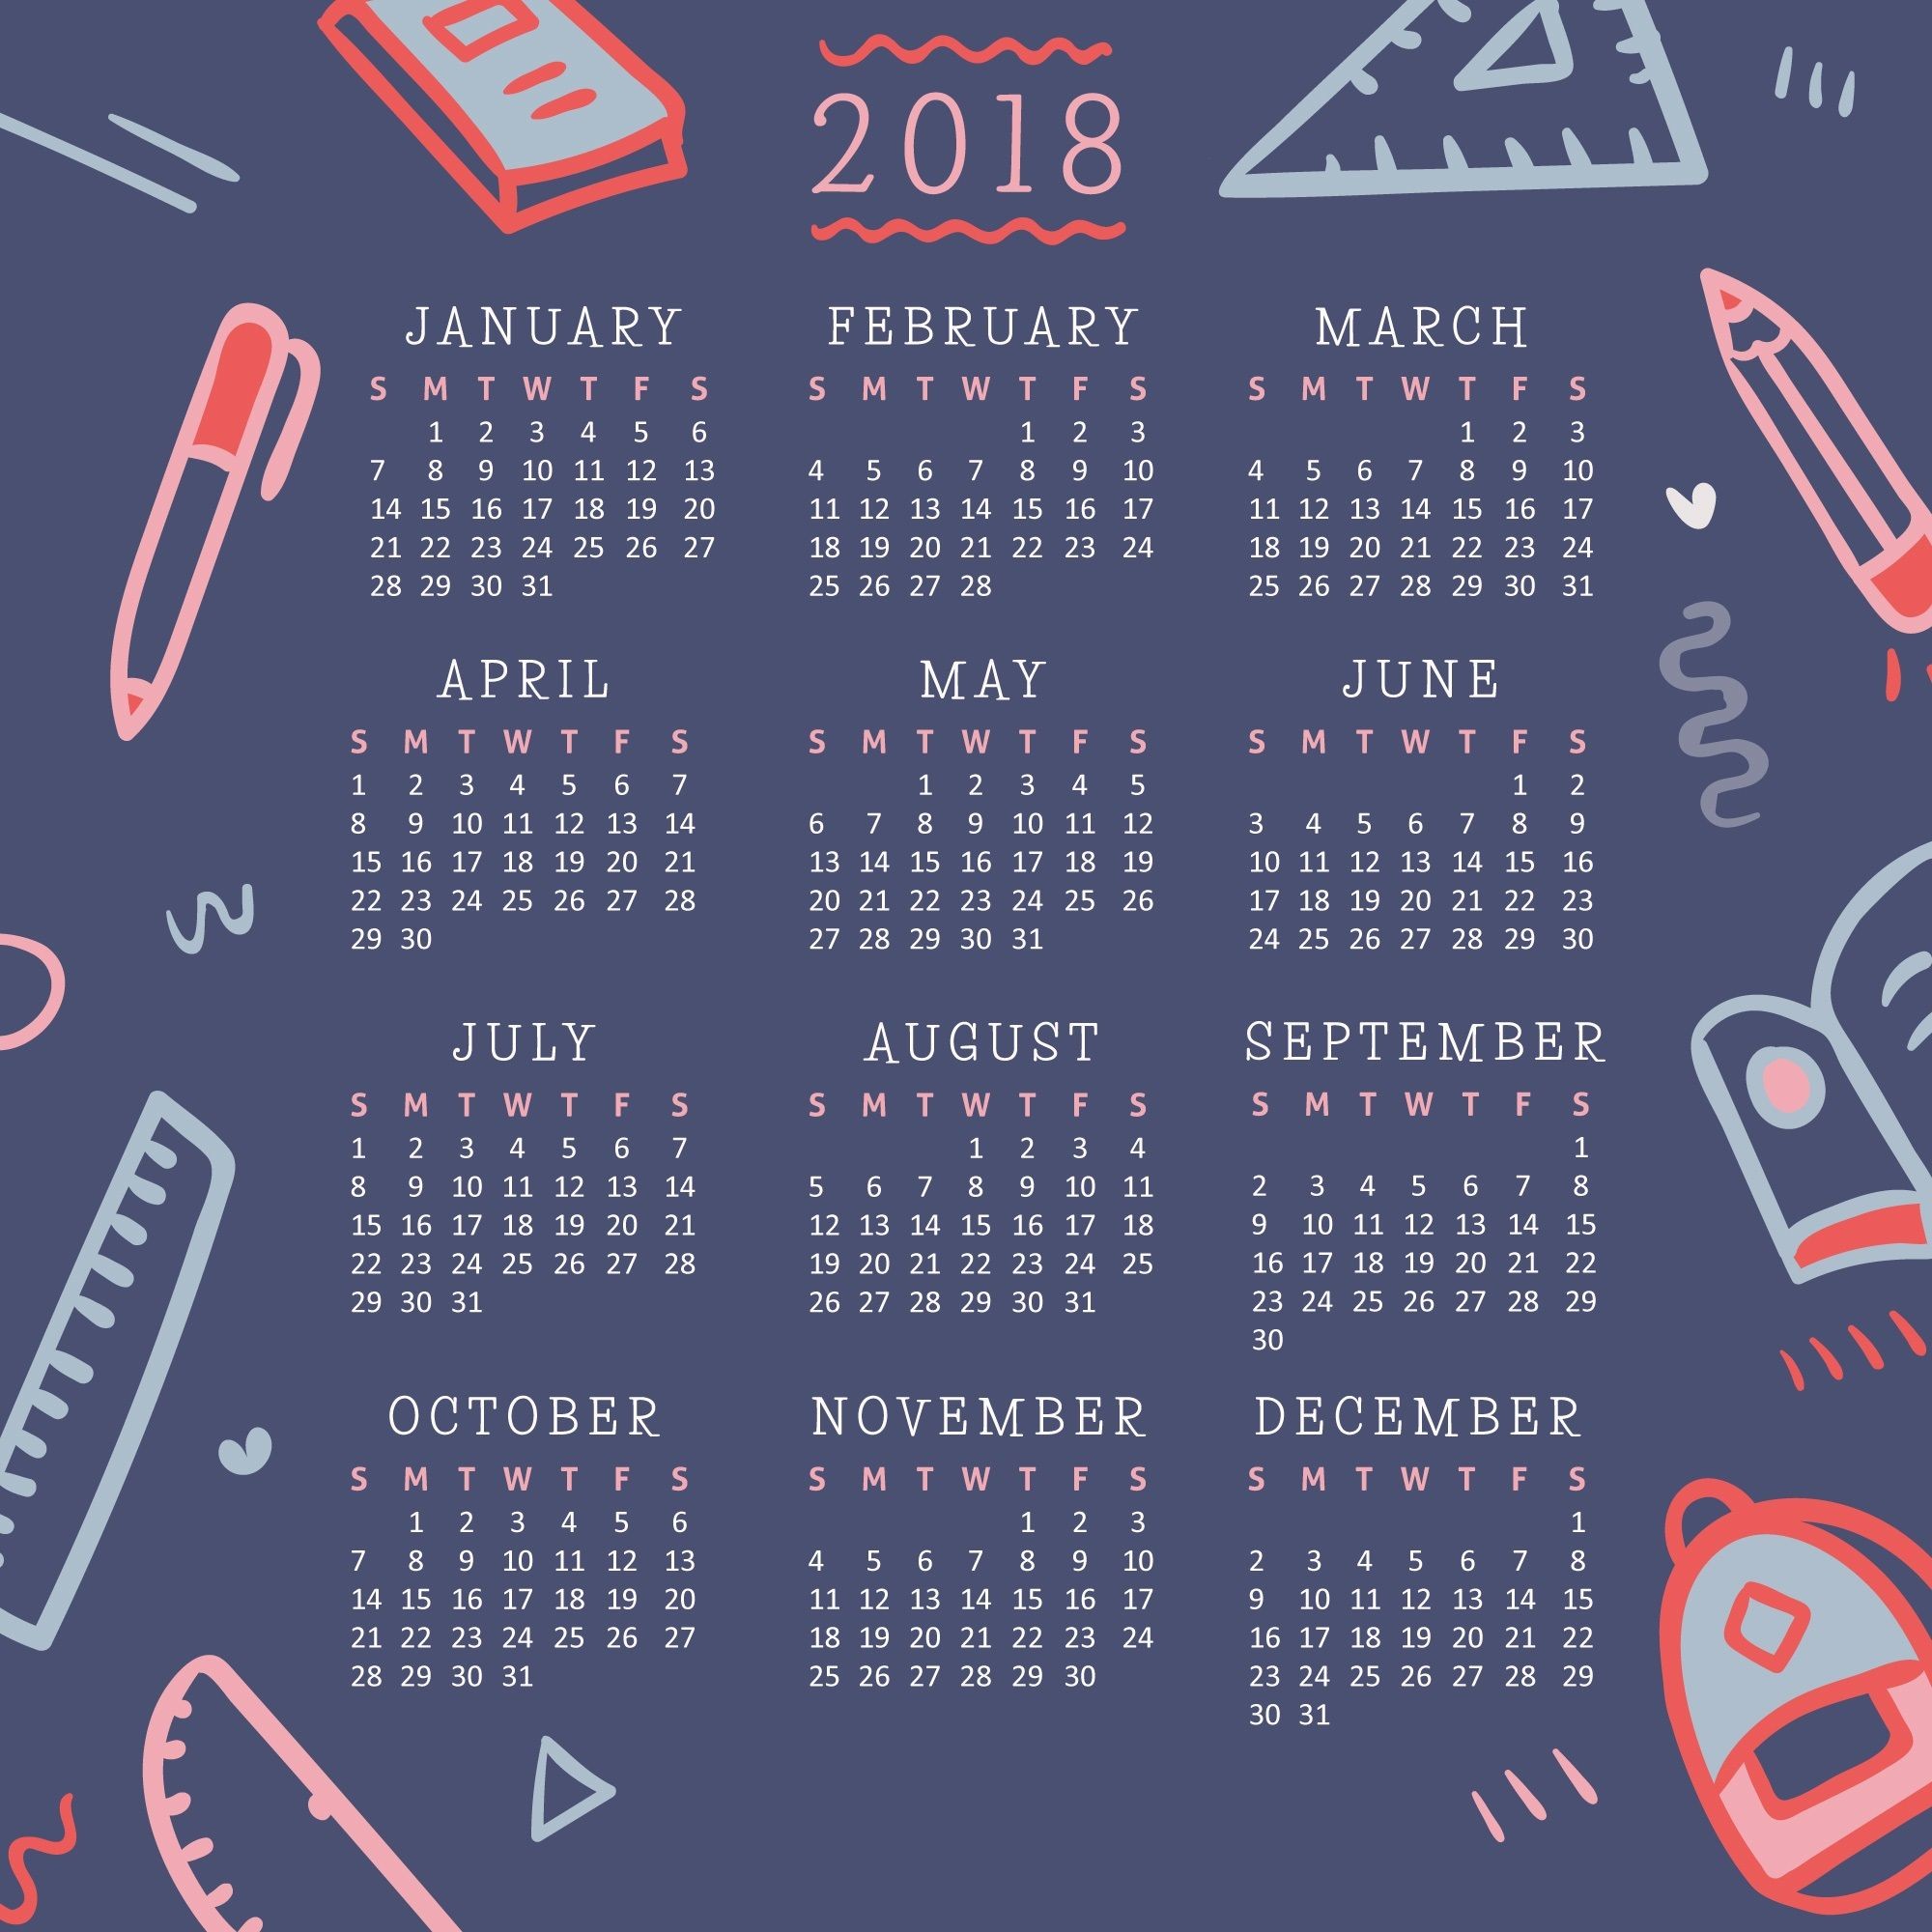 Cool 2018 Calendar Wallpaper - Desktop Wallpaper Calendar 2018 - HD Wallpaper 